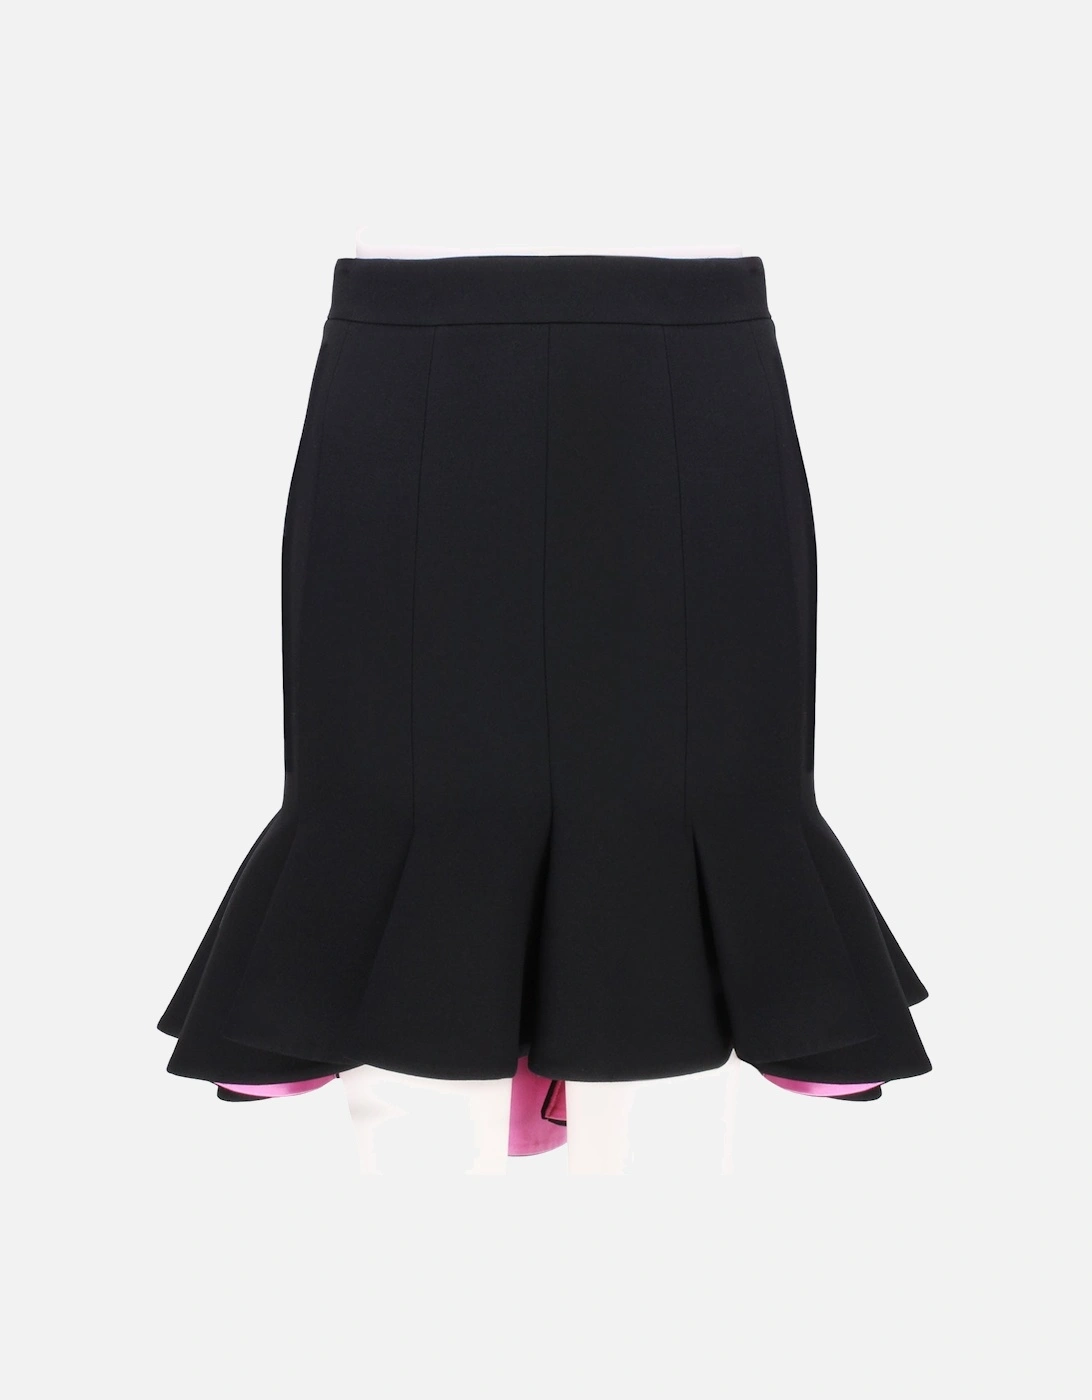 Skirt, 11 of 10